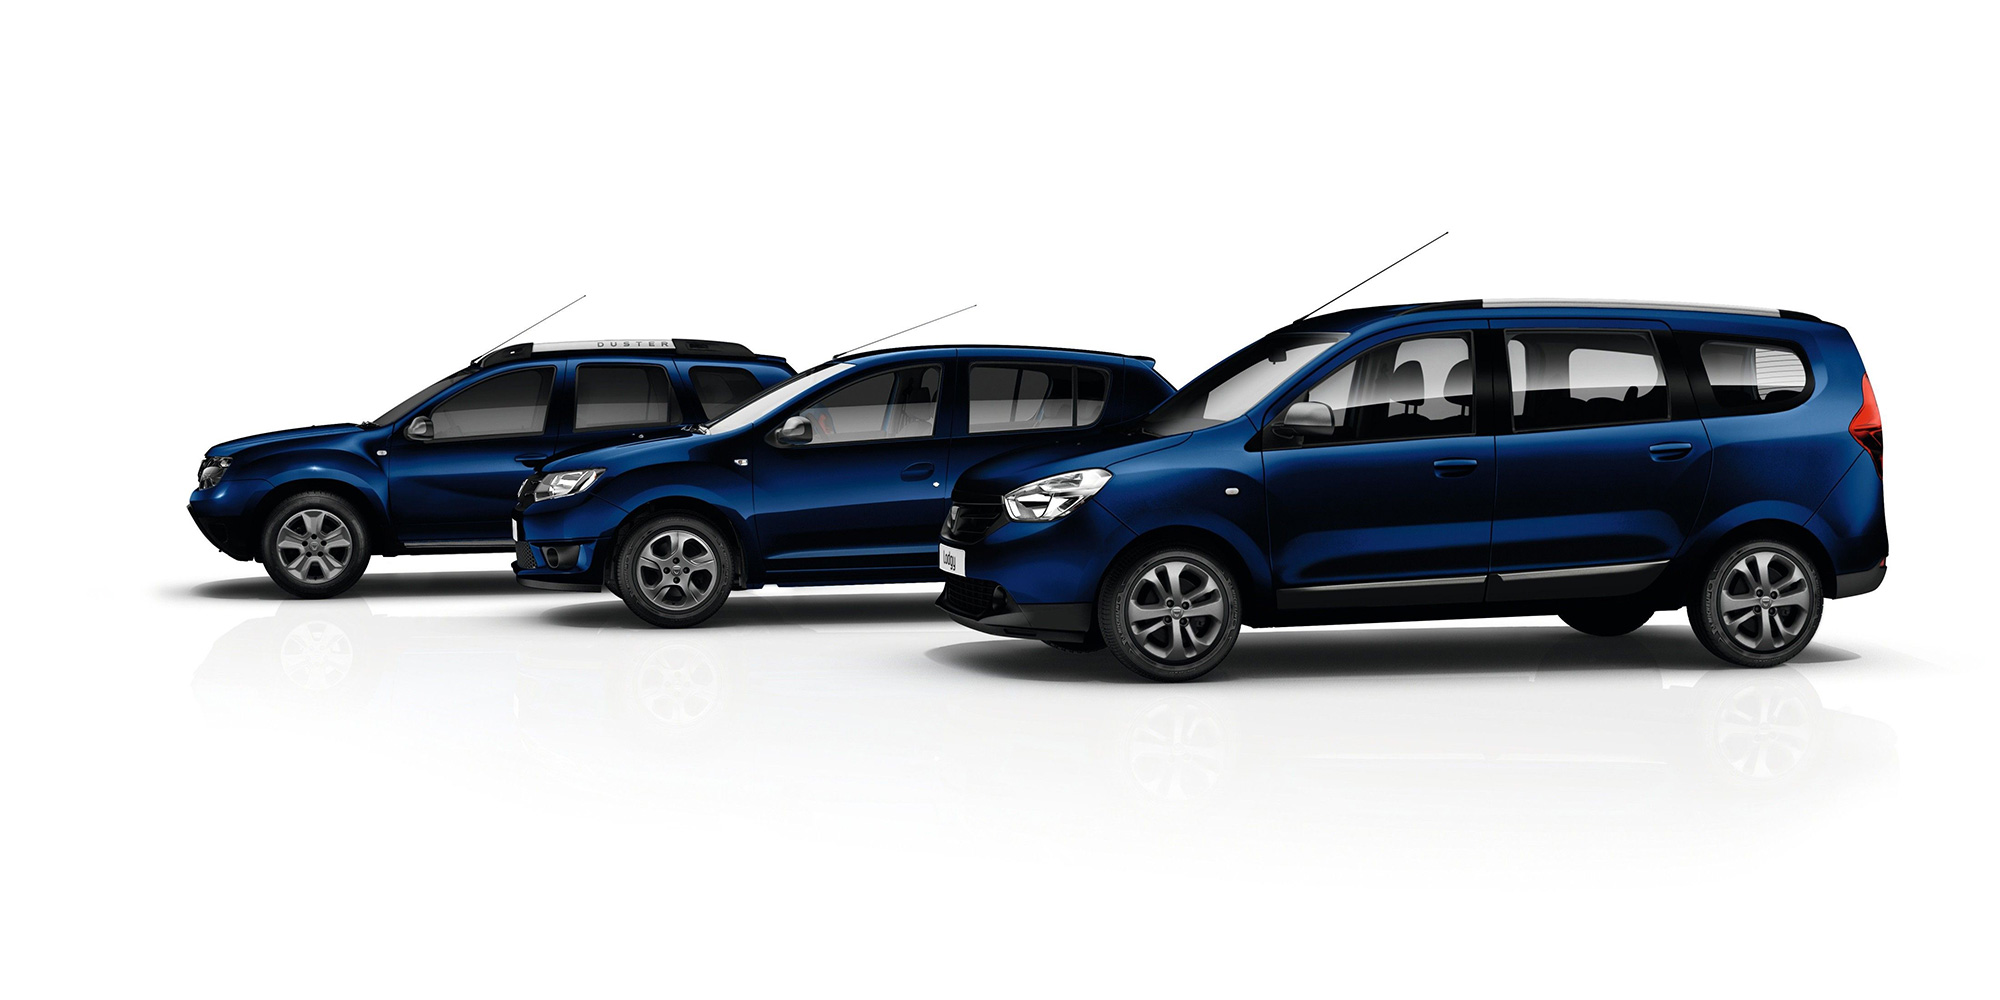 Dacia Spring Zubehör: praktische Features für das kompakte Elektroauto -  Blog Dacia